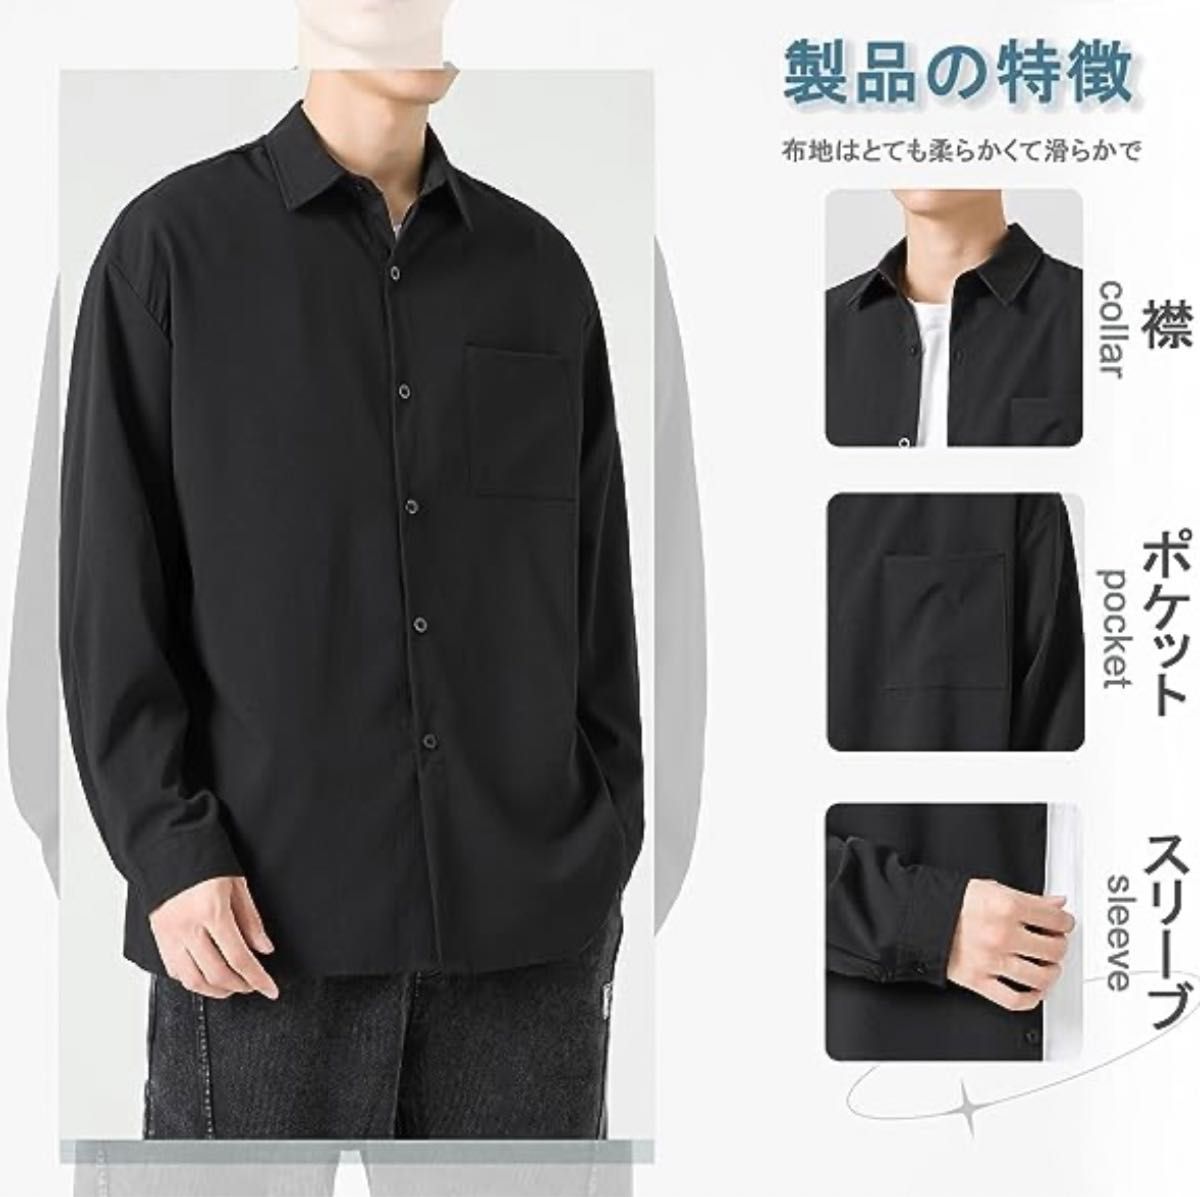 新品 シャツ メンズ 長袖 カジュアル ビジネス 薄手 XL 春 ビジネス 黒